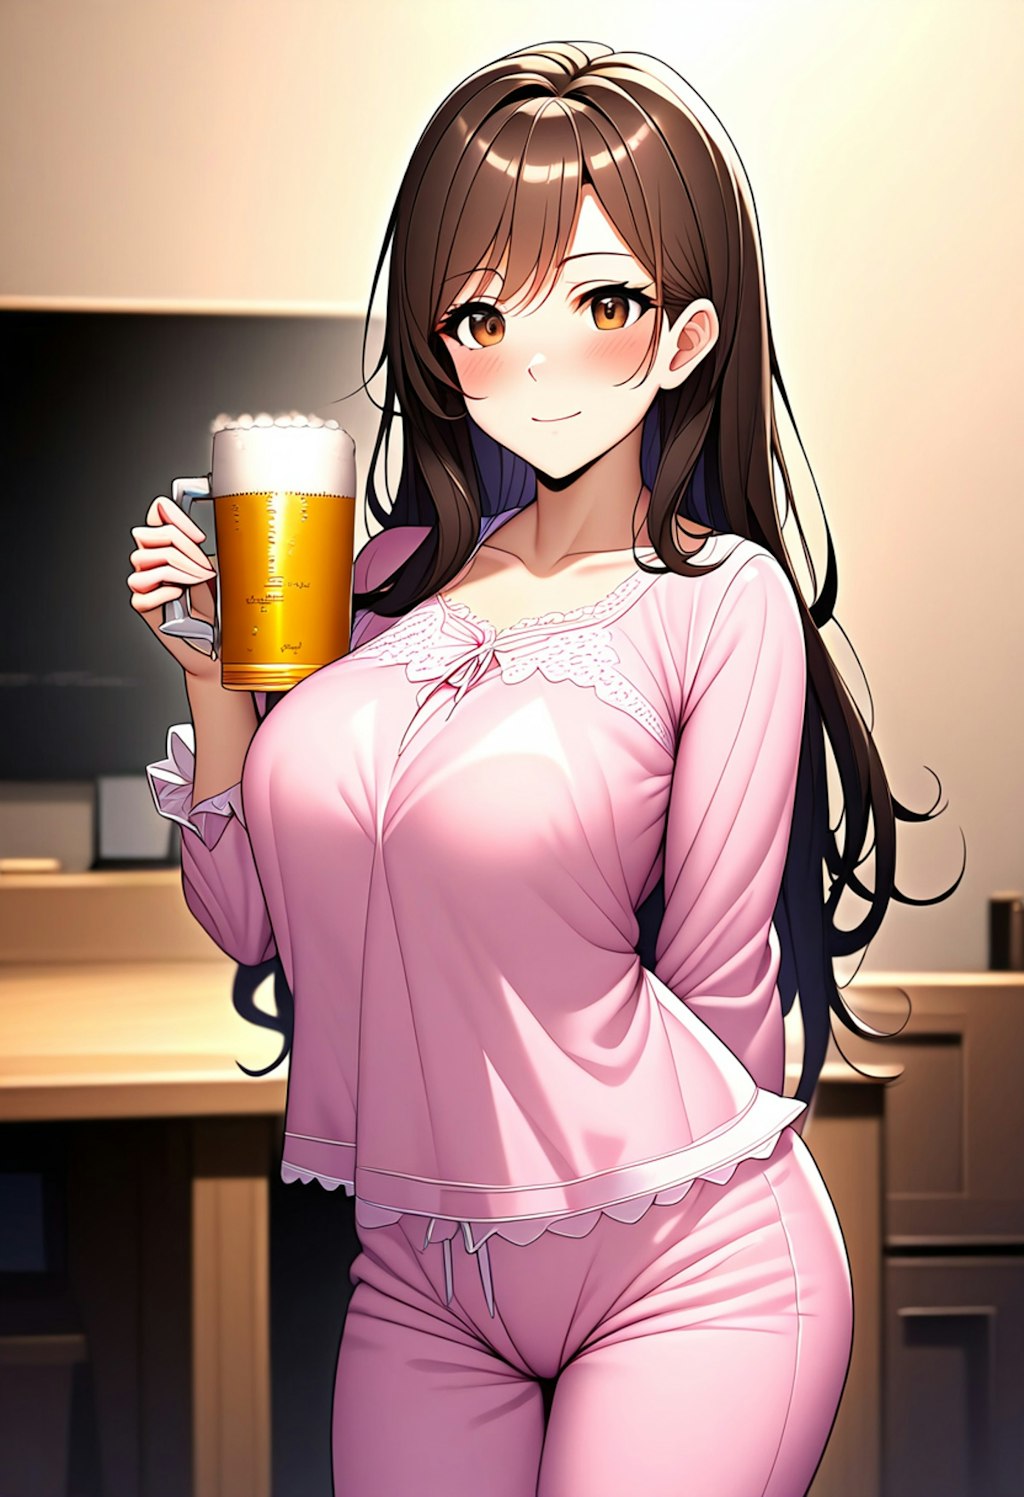 ビールを飲む女